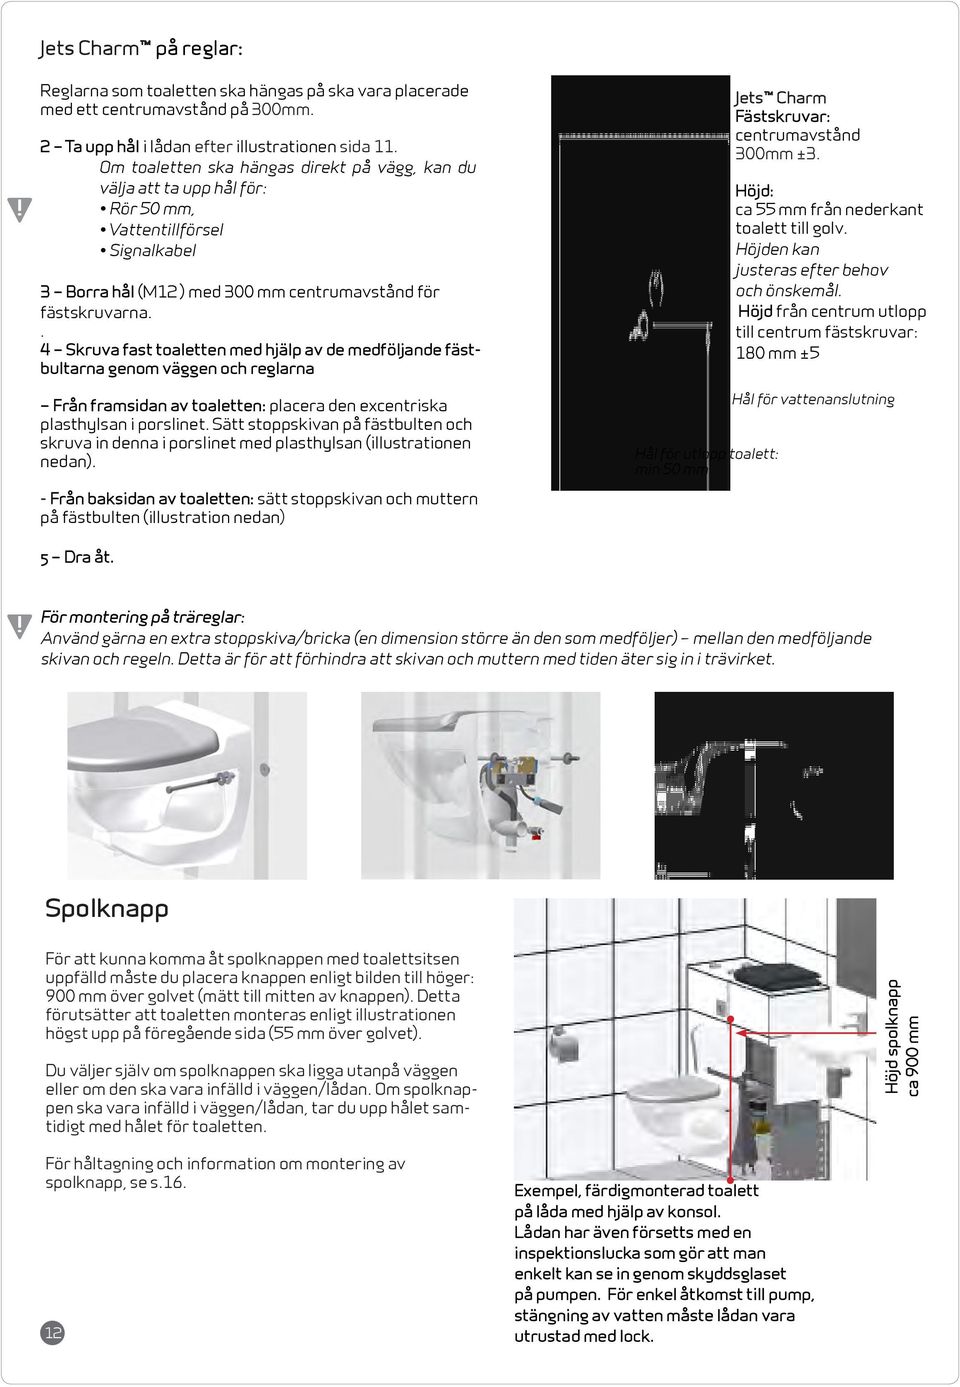 . 4 Skruva fast toaletten med hjälp av de medföljande fästbultarna genom väggen och reglarna Från framsidan av toaletten: placera den excentriska plasthylsan i porslinet.